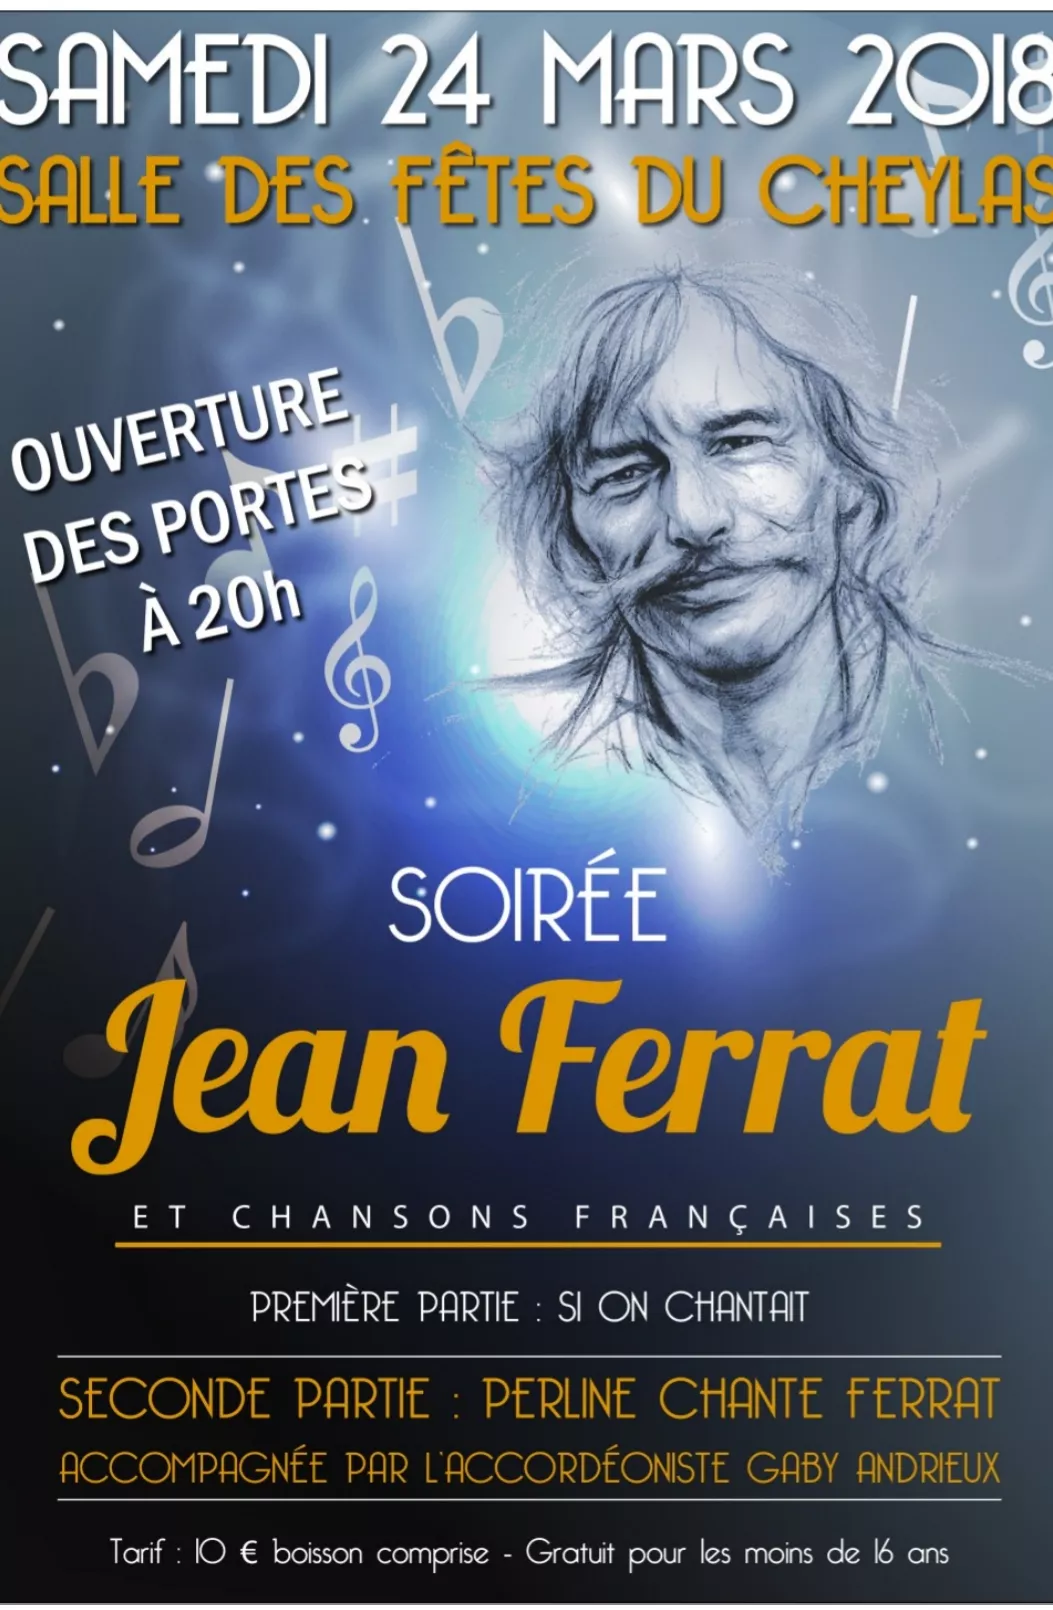 Soirée Jean Ferrat!